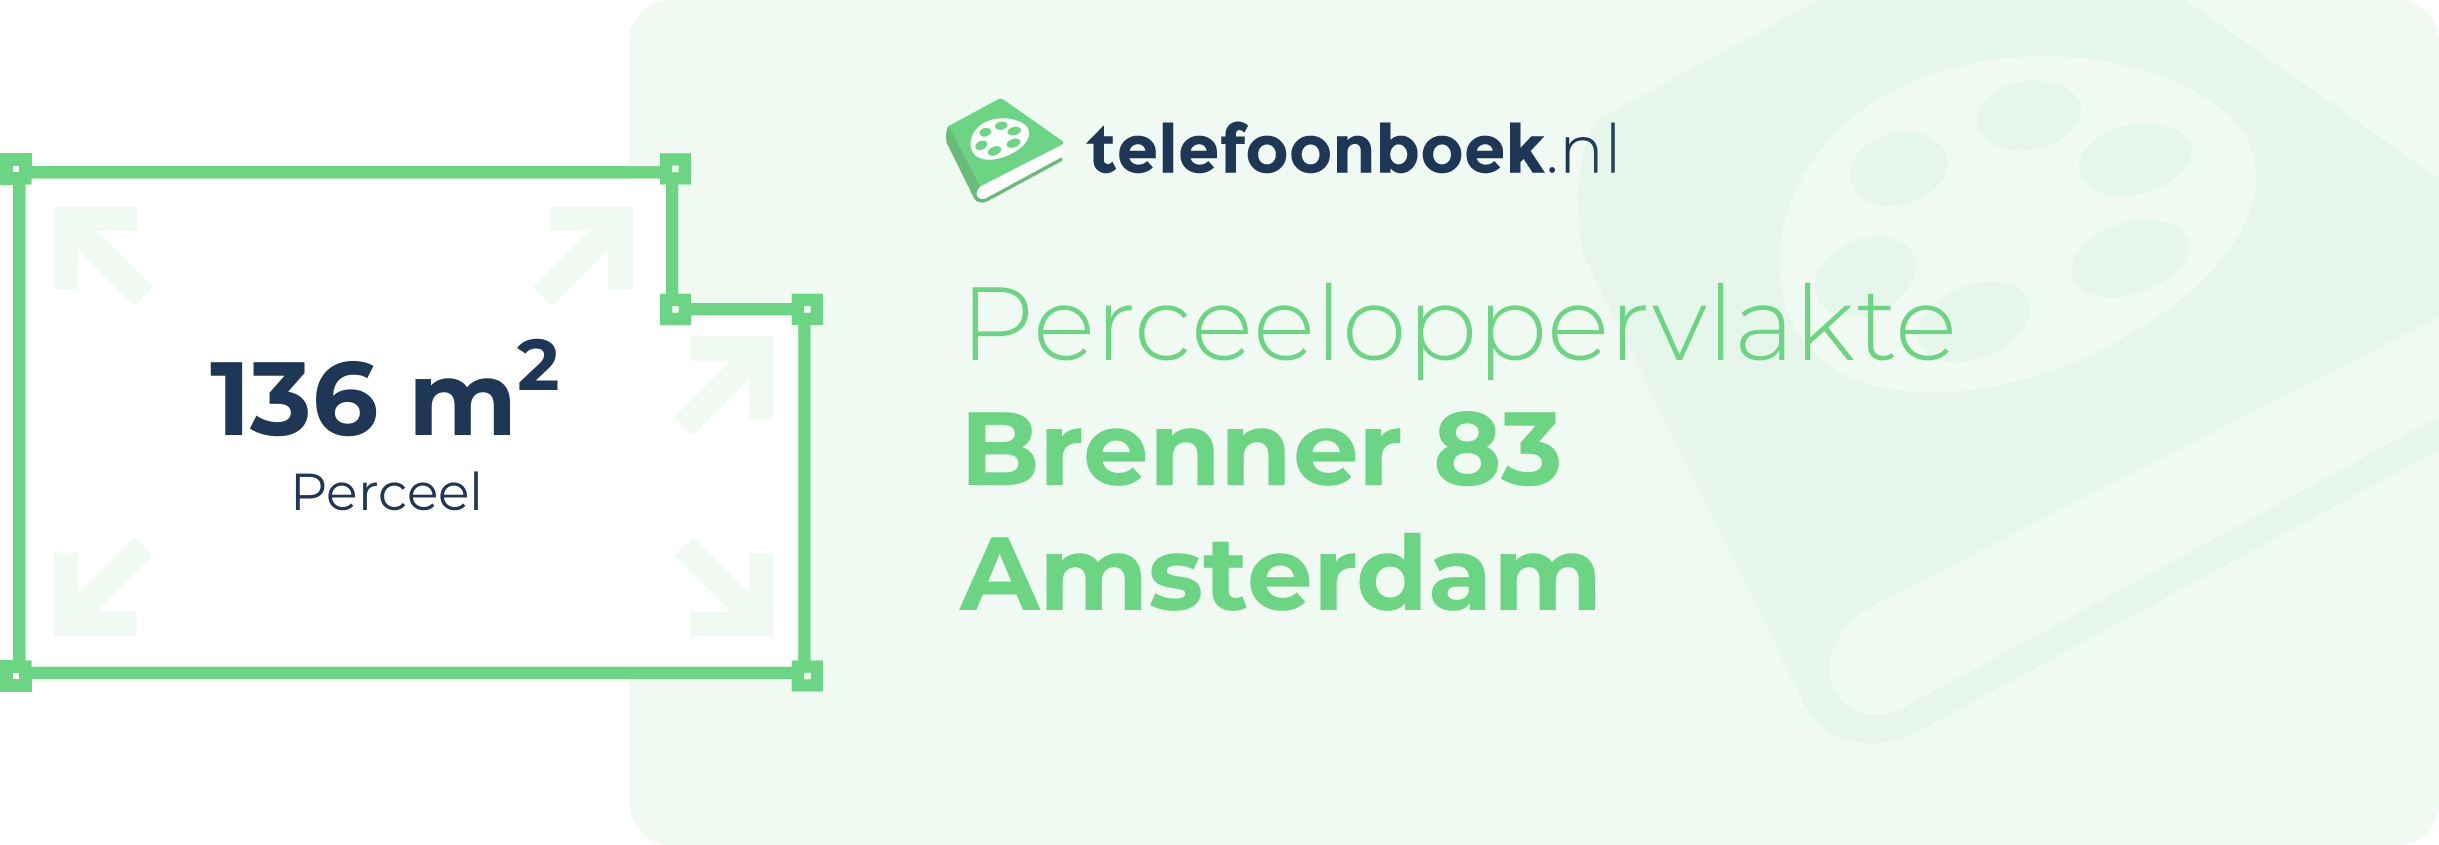 Perceeloppervlakte Brenner 83 Amsterdam